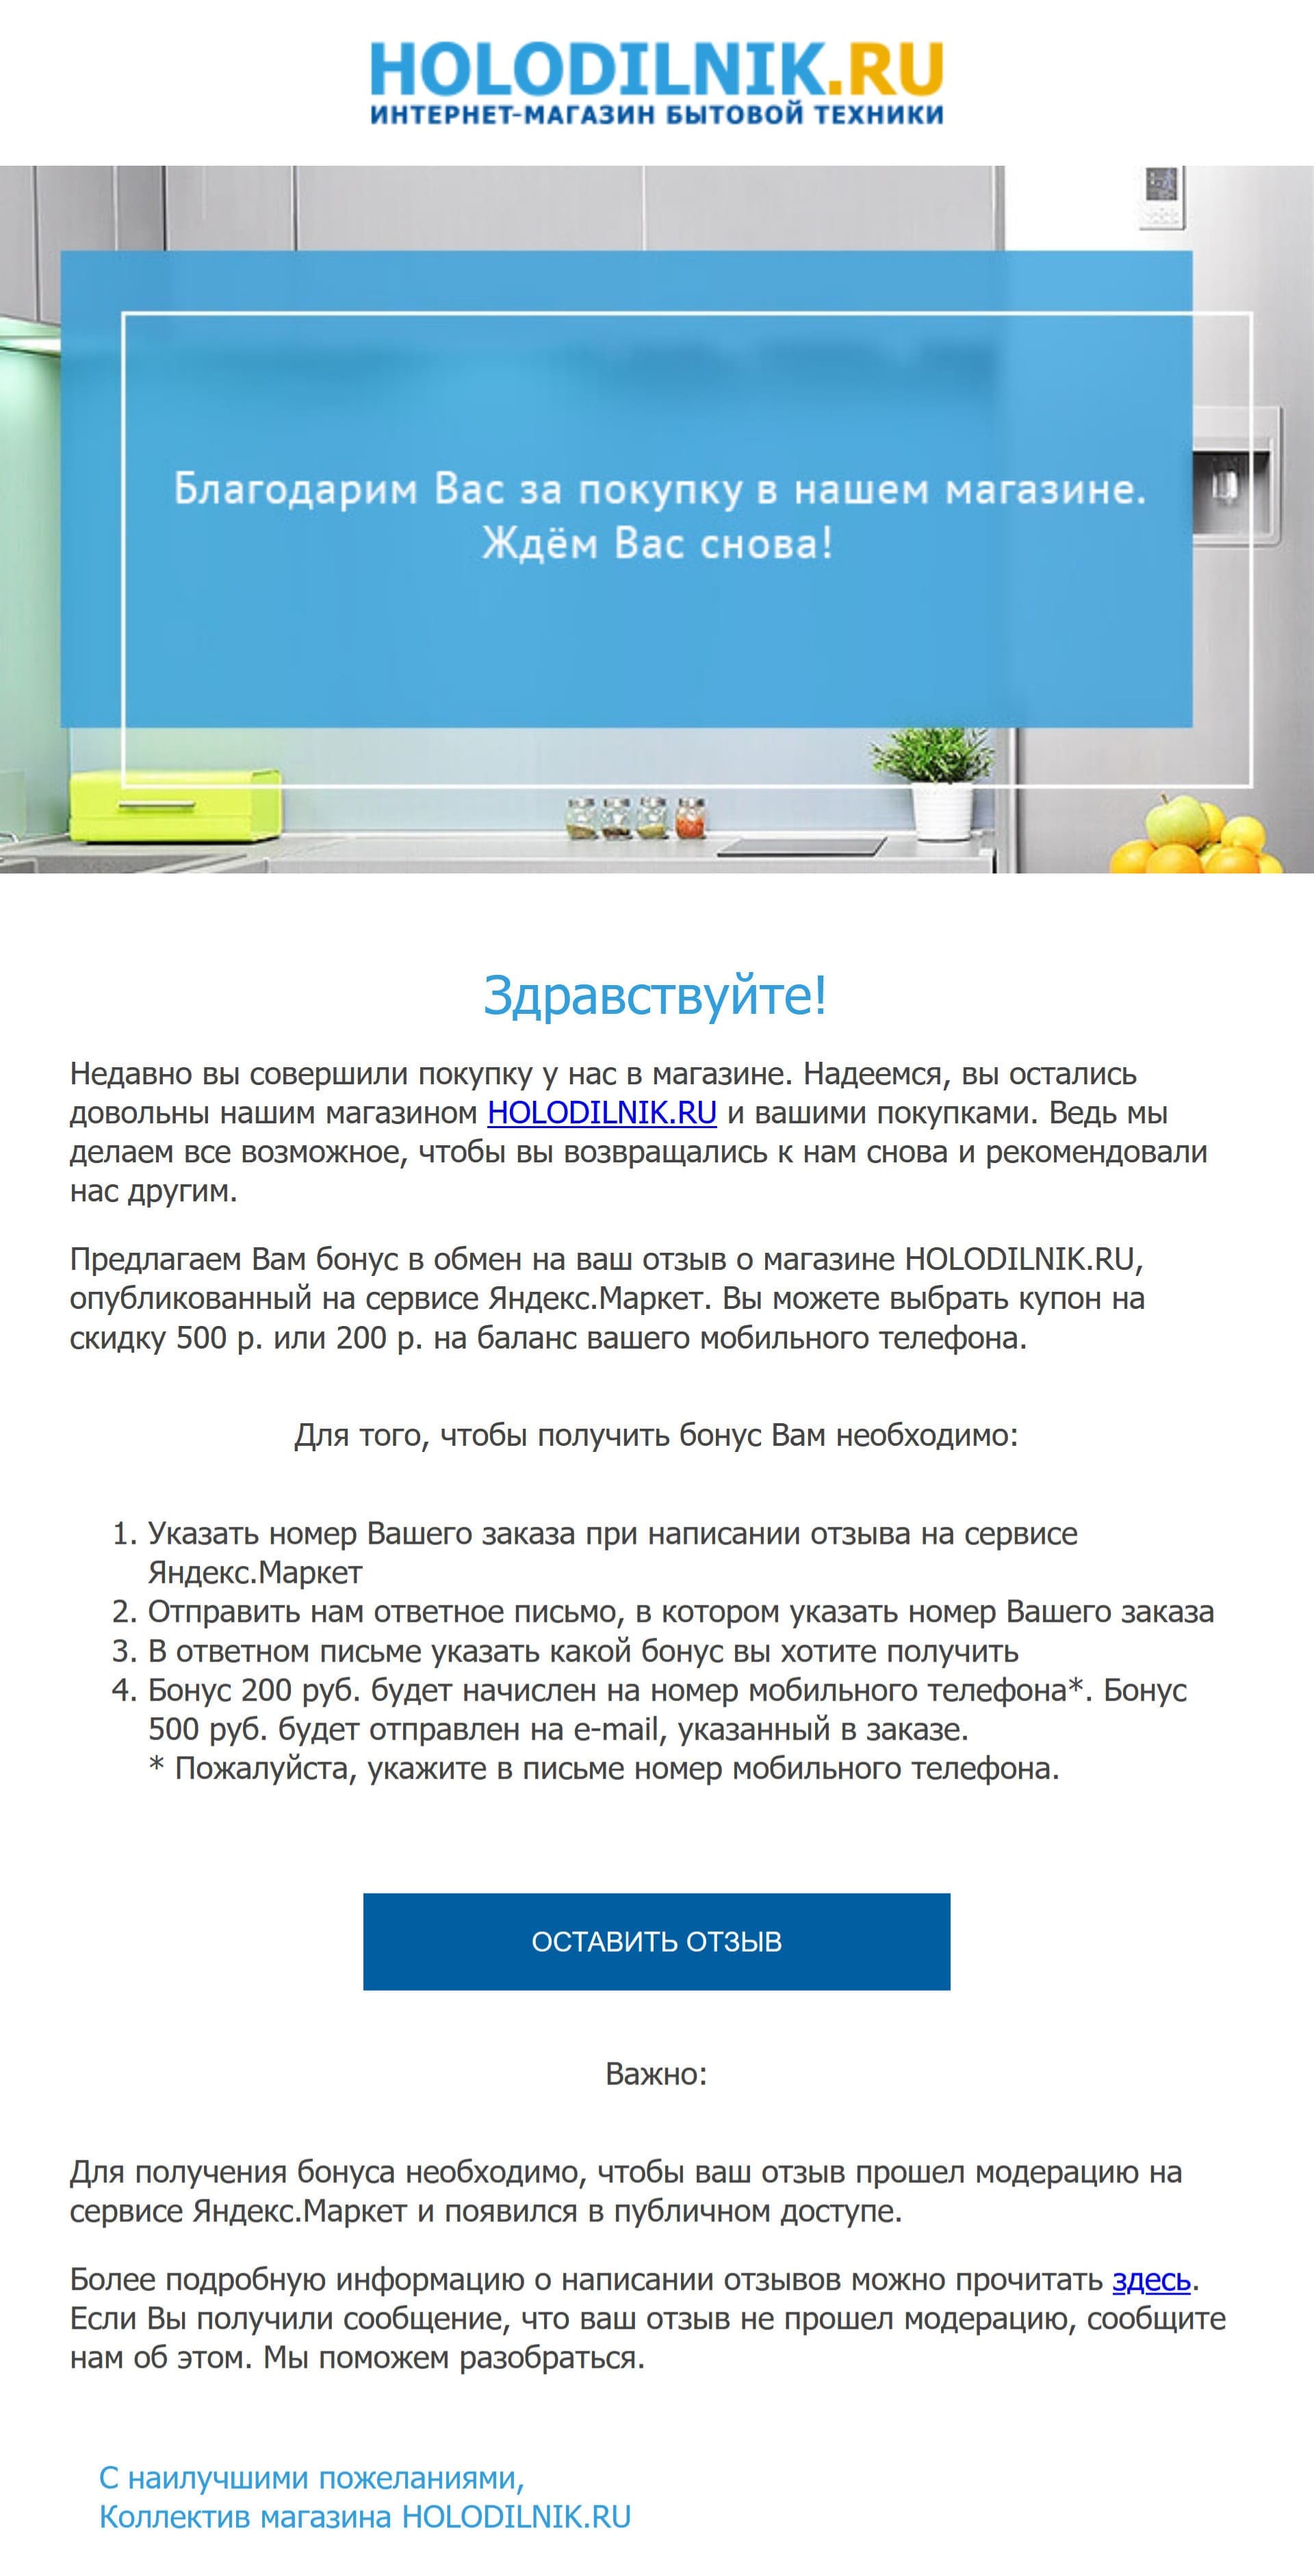 Чтобы клиенты оставляли отзыв на Яндекс.Маркете, дарим на выбор скидку или пополнение баланса телефона 